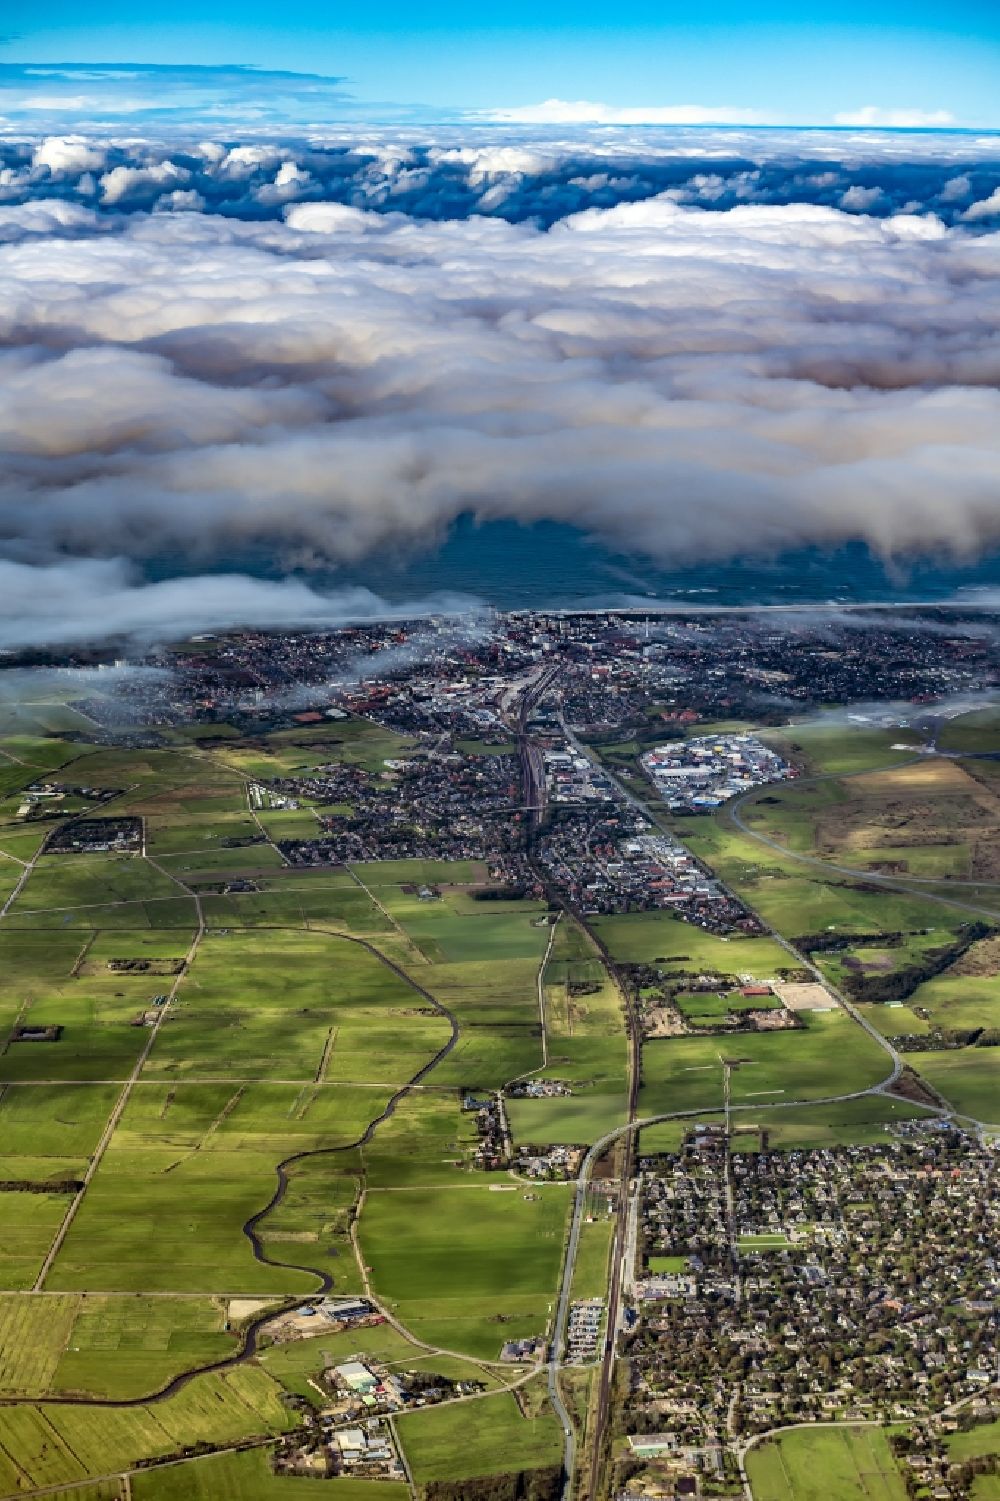 Luftbild Sylt - Wetterlage mit Wolkenbildung auf der Insel Sylt in Westerland im Bundesland Schleswig-Holstein, Deutschland